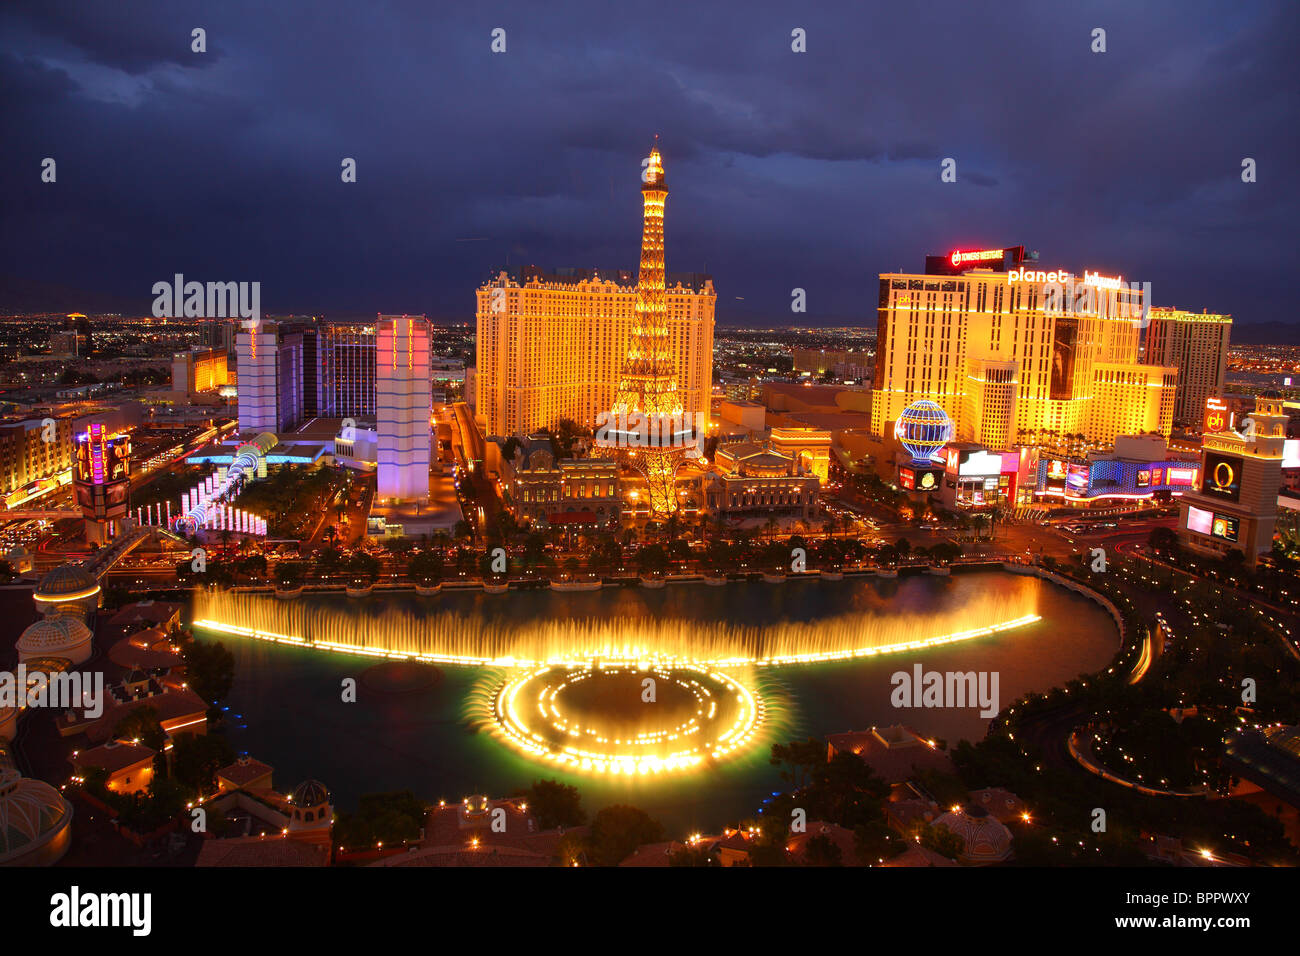 Vue de la fontaine du Bellagio et Paris hotel le soir, Las Vegas Banque D'Images